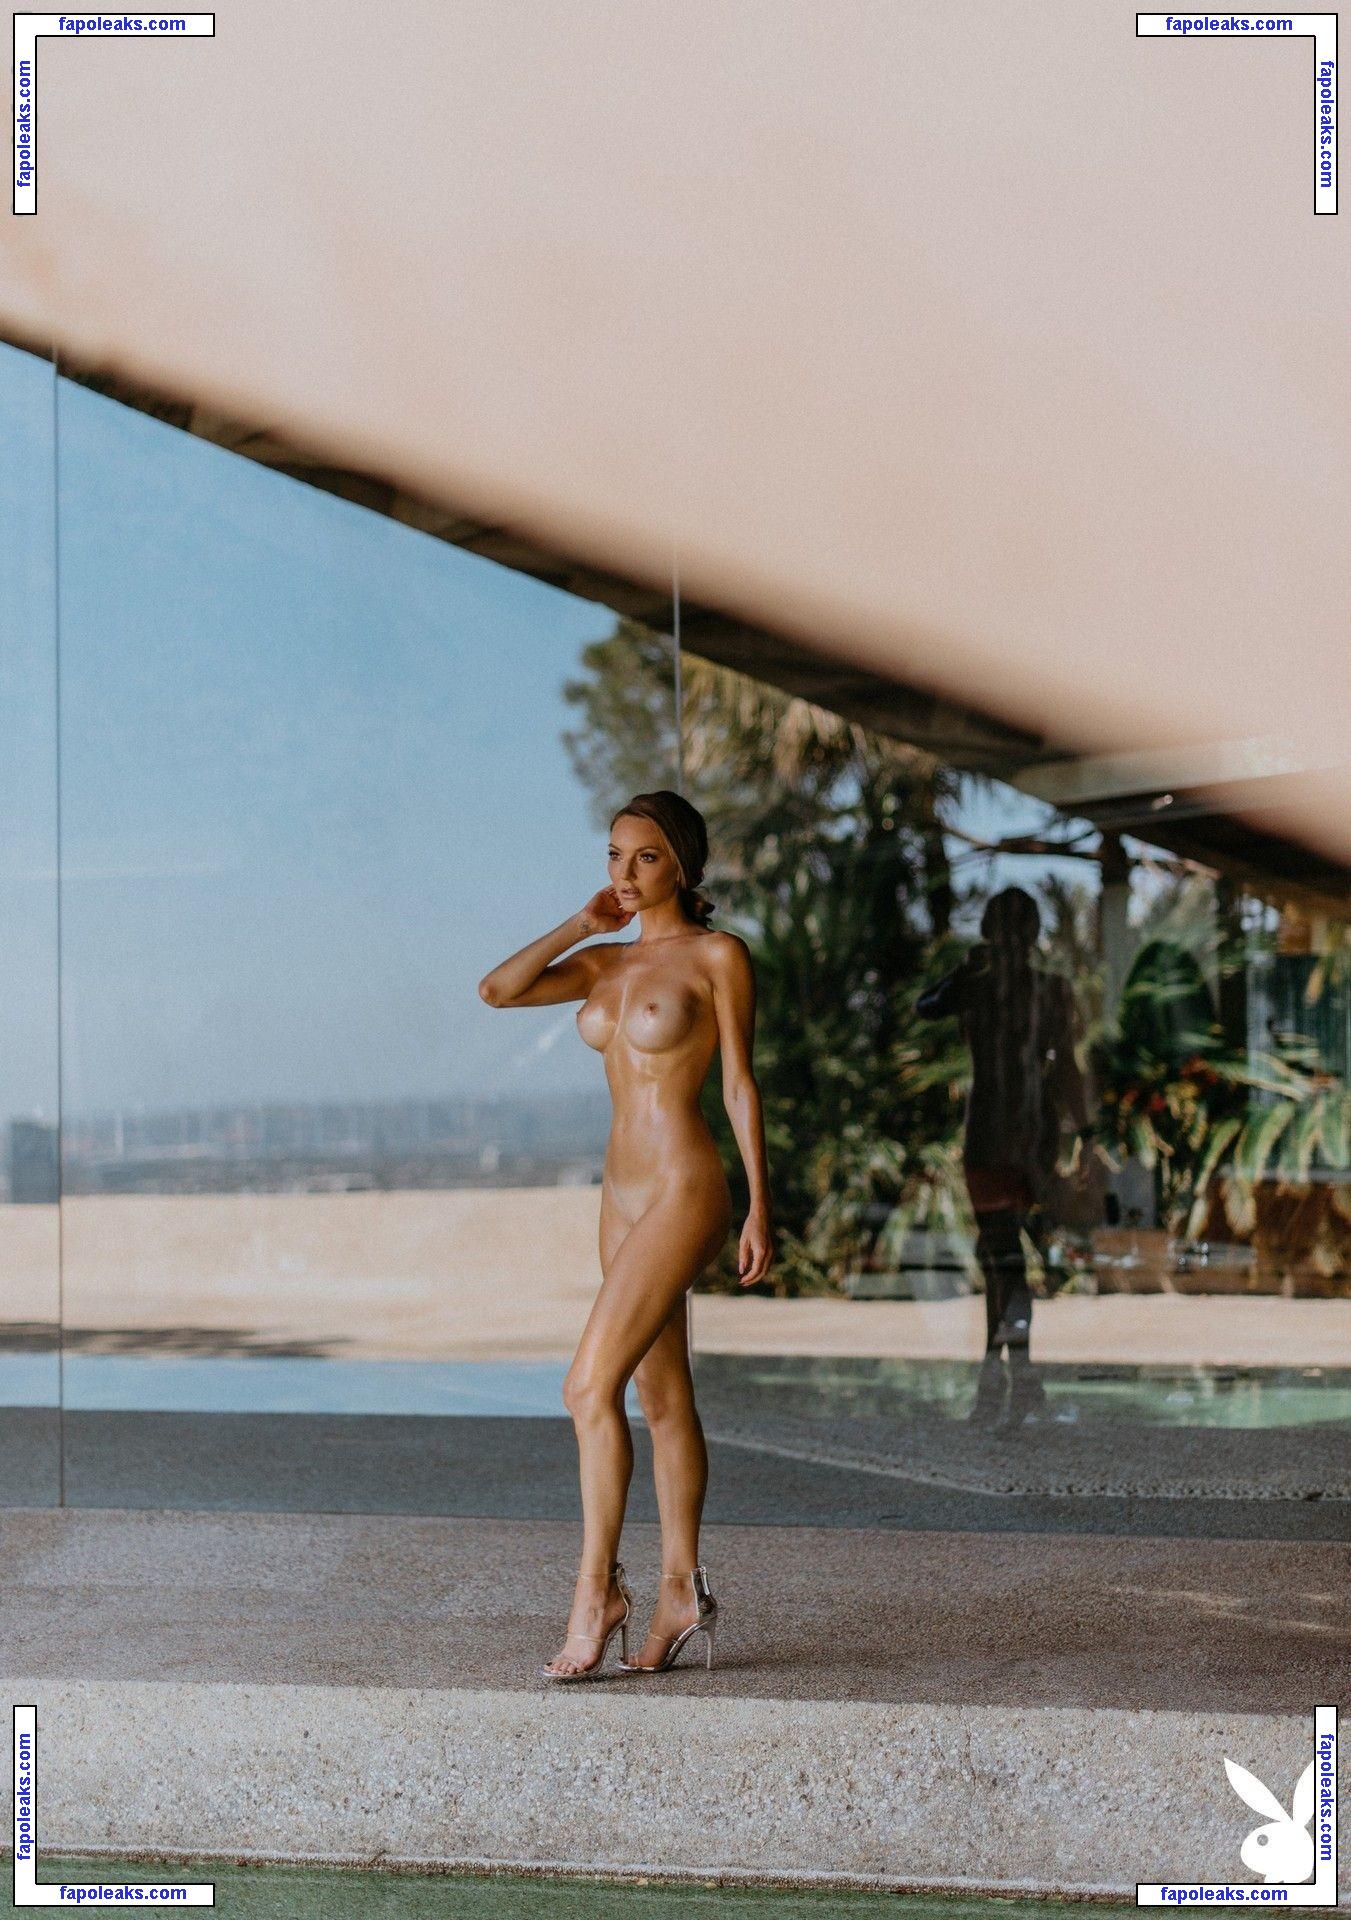 Jocelyn Binder nude photo #0029 from OnlyFans